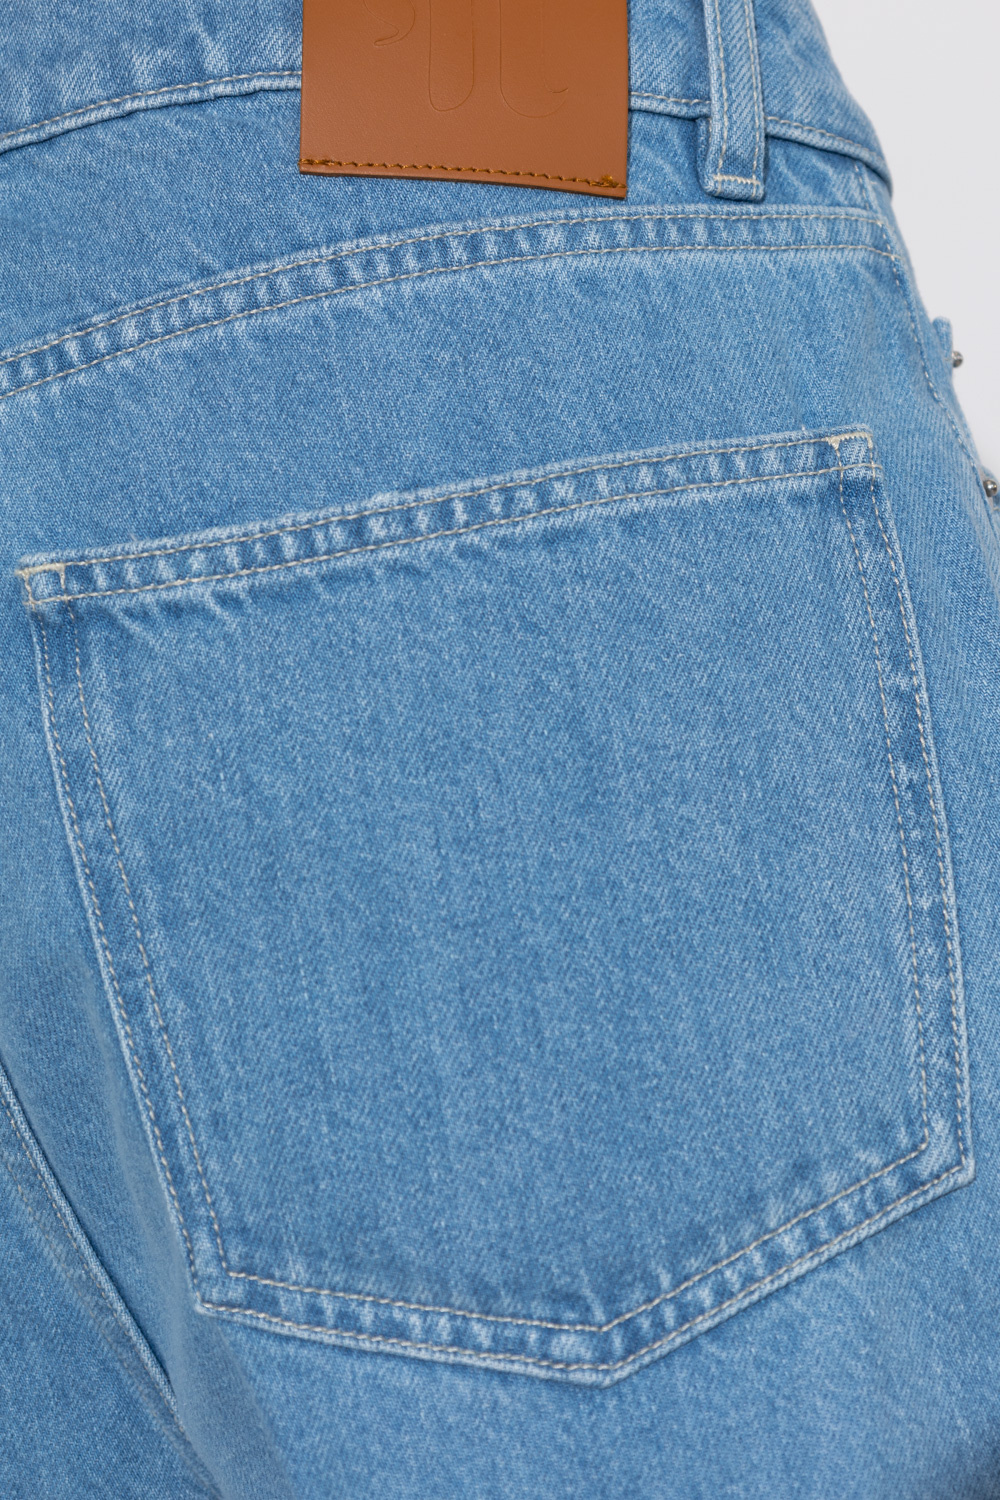 Nanushka ‘Zoey’ jeans